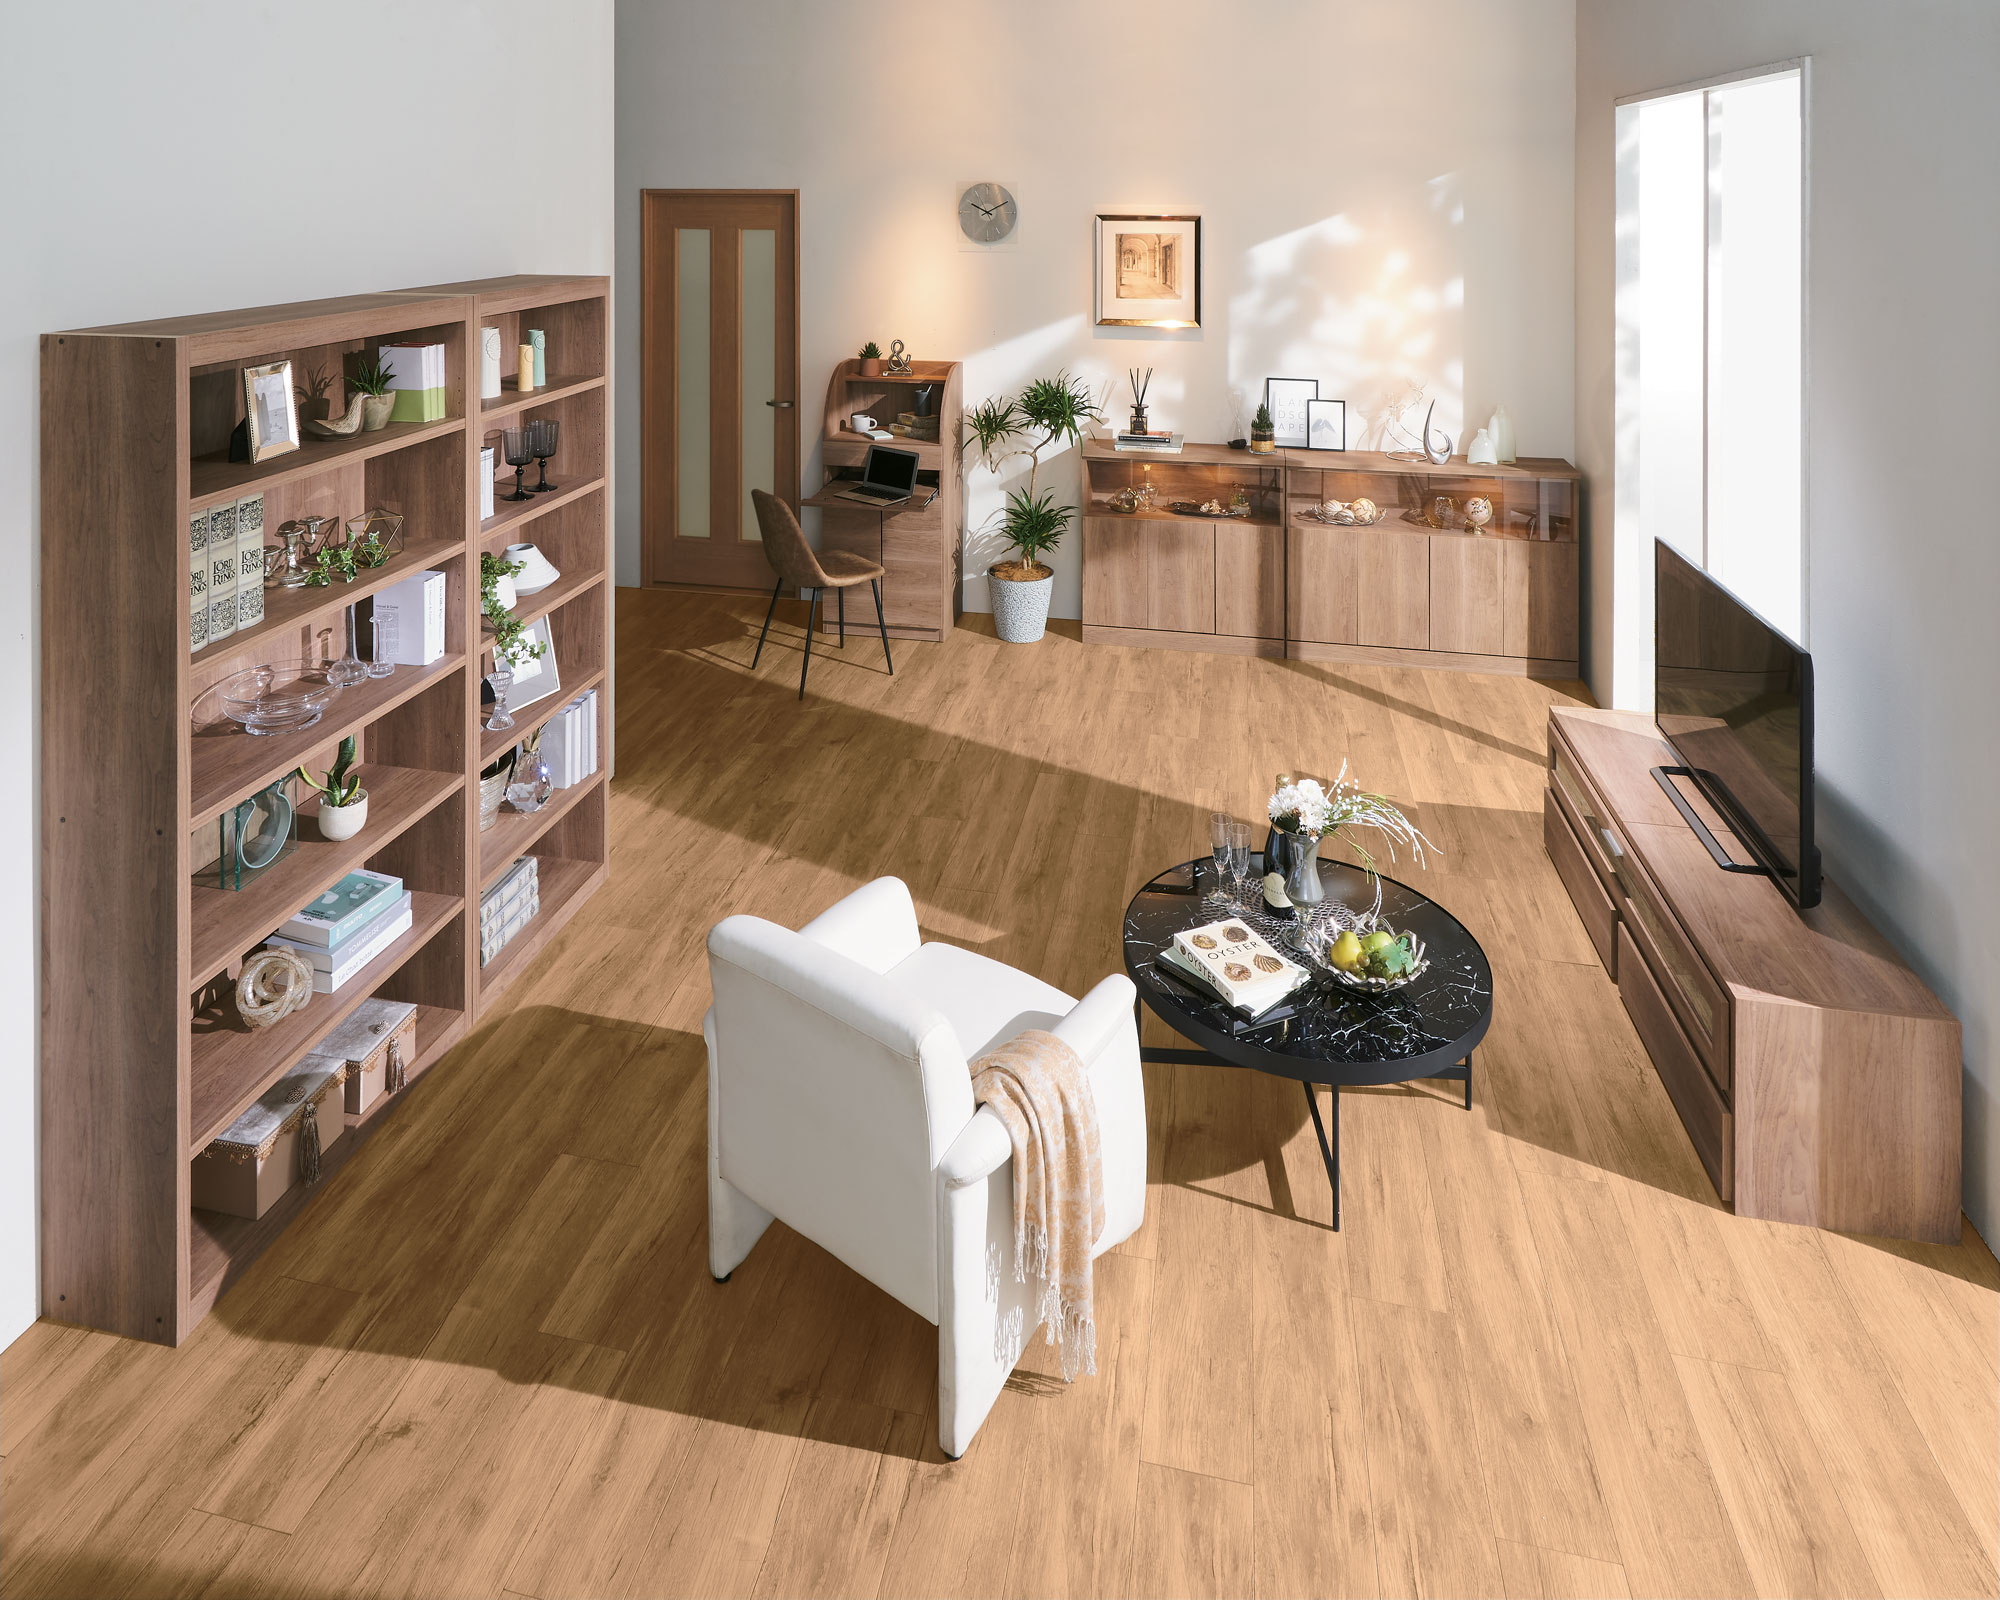 ディノスより 創業50周年を記念し 無塗装 無垢の天然木色を忠実に再現した新色家具を新発売 株式会社 Dinos Corporationのプレスリリース